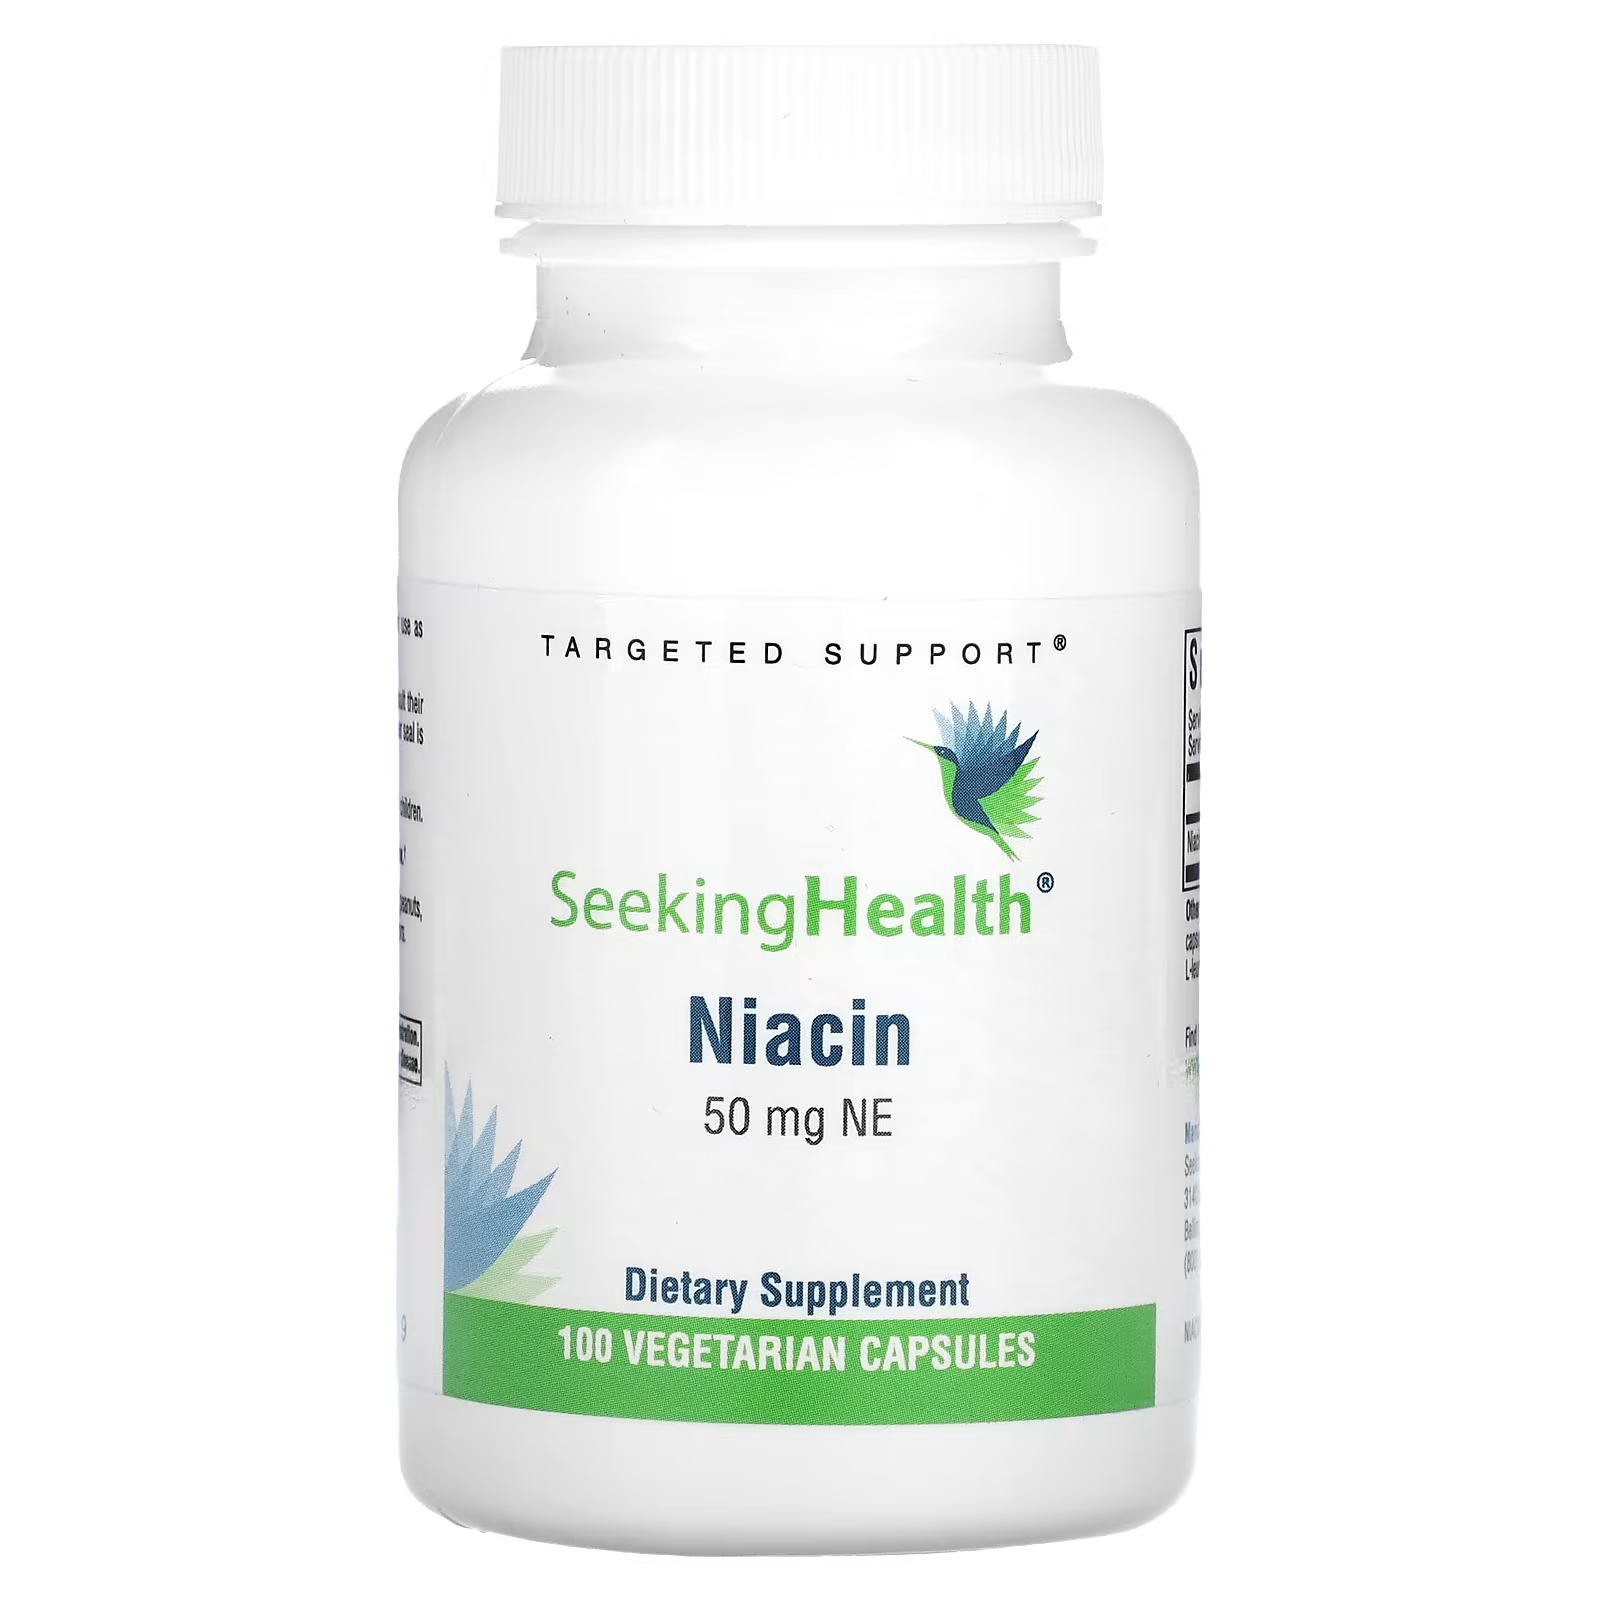 Биологически активная добавка Seeking Health ниацин, 50 мг., 100 капсул seeking health ниацин 50 мг ne 100 вегетарианских капсул